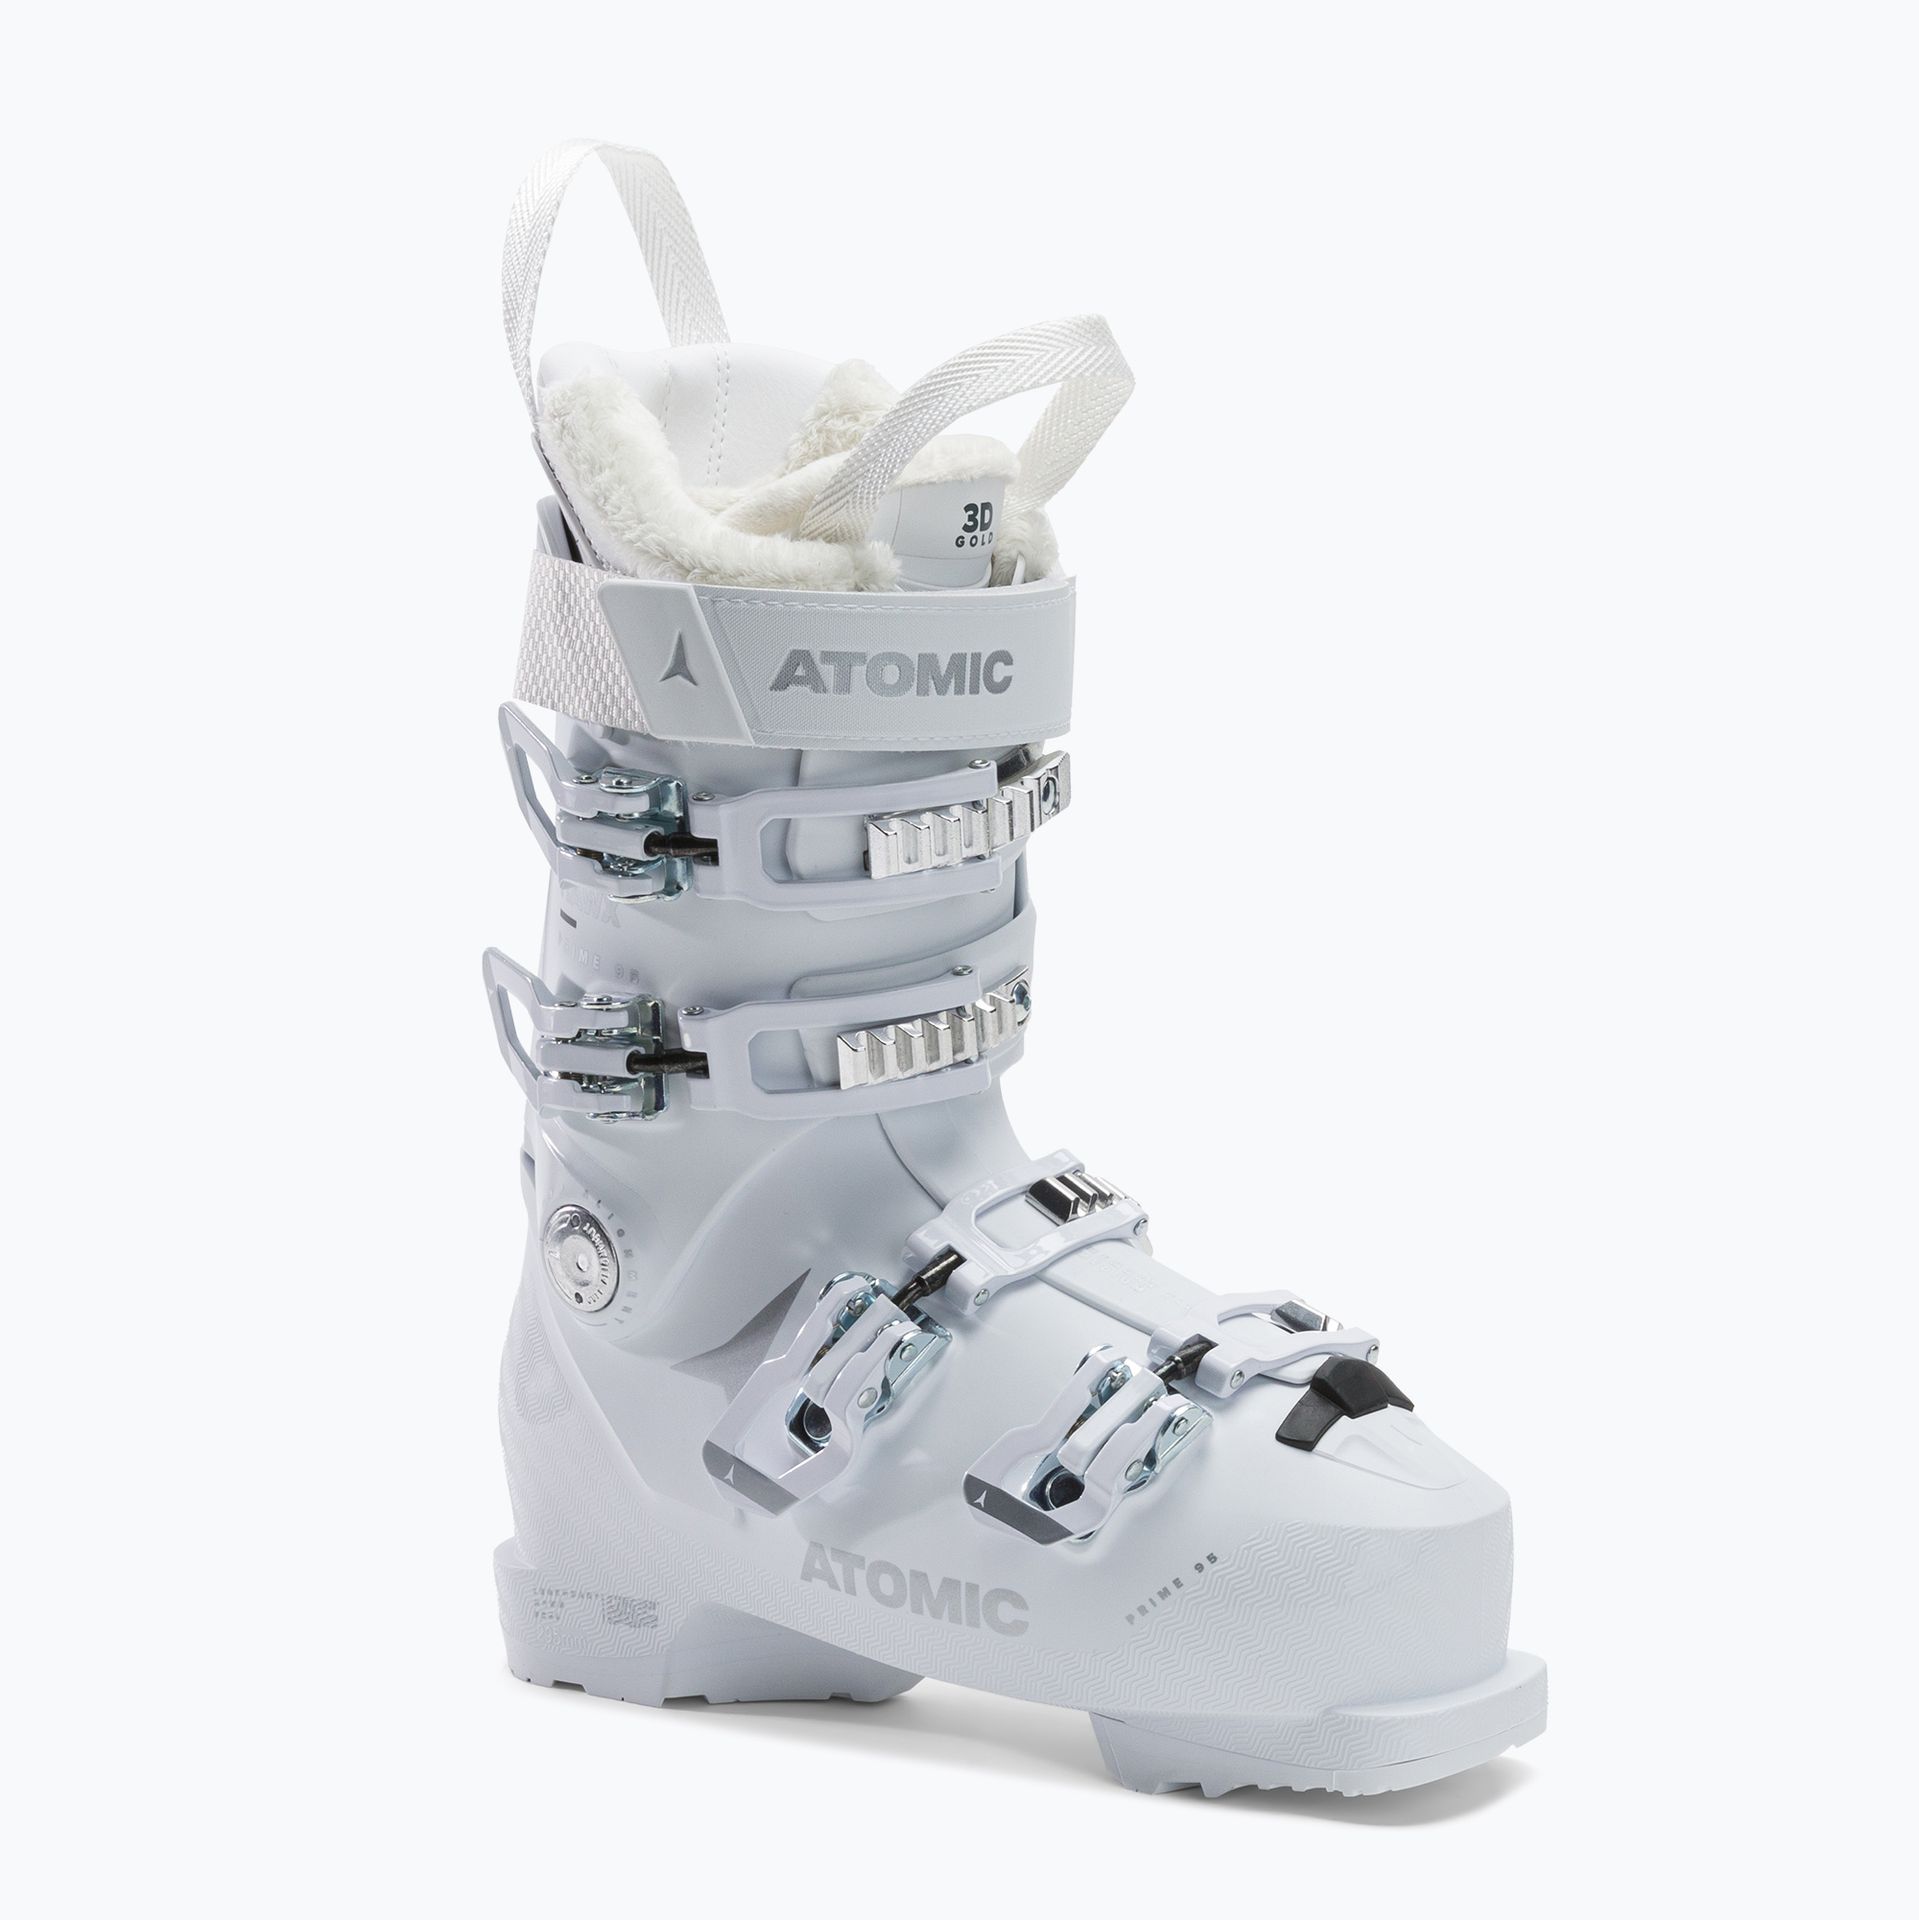 Buty narciarskie damskie Atomic Hawx Prime 95 białe AE5026860  23.0-23.5 cm